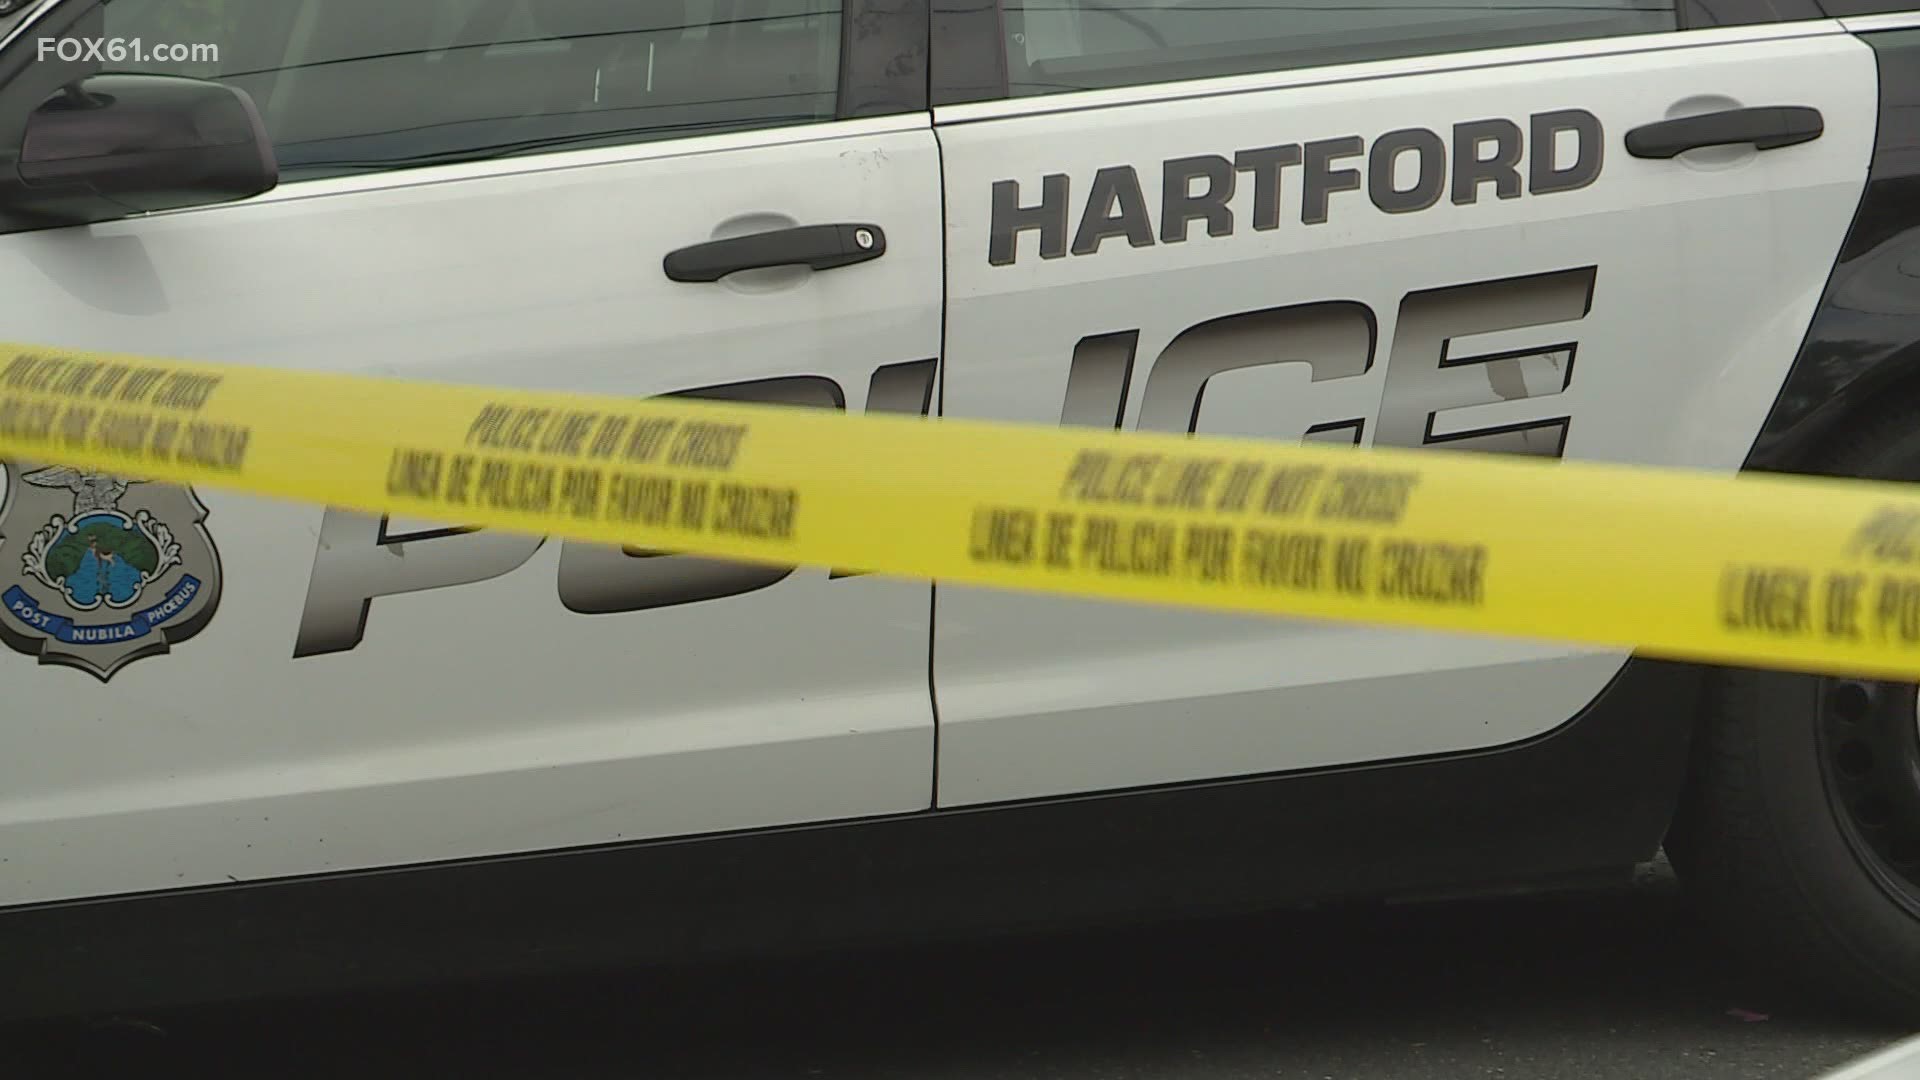 Investigators are on the scene of a homicide in Hartford